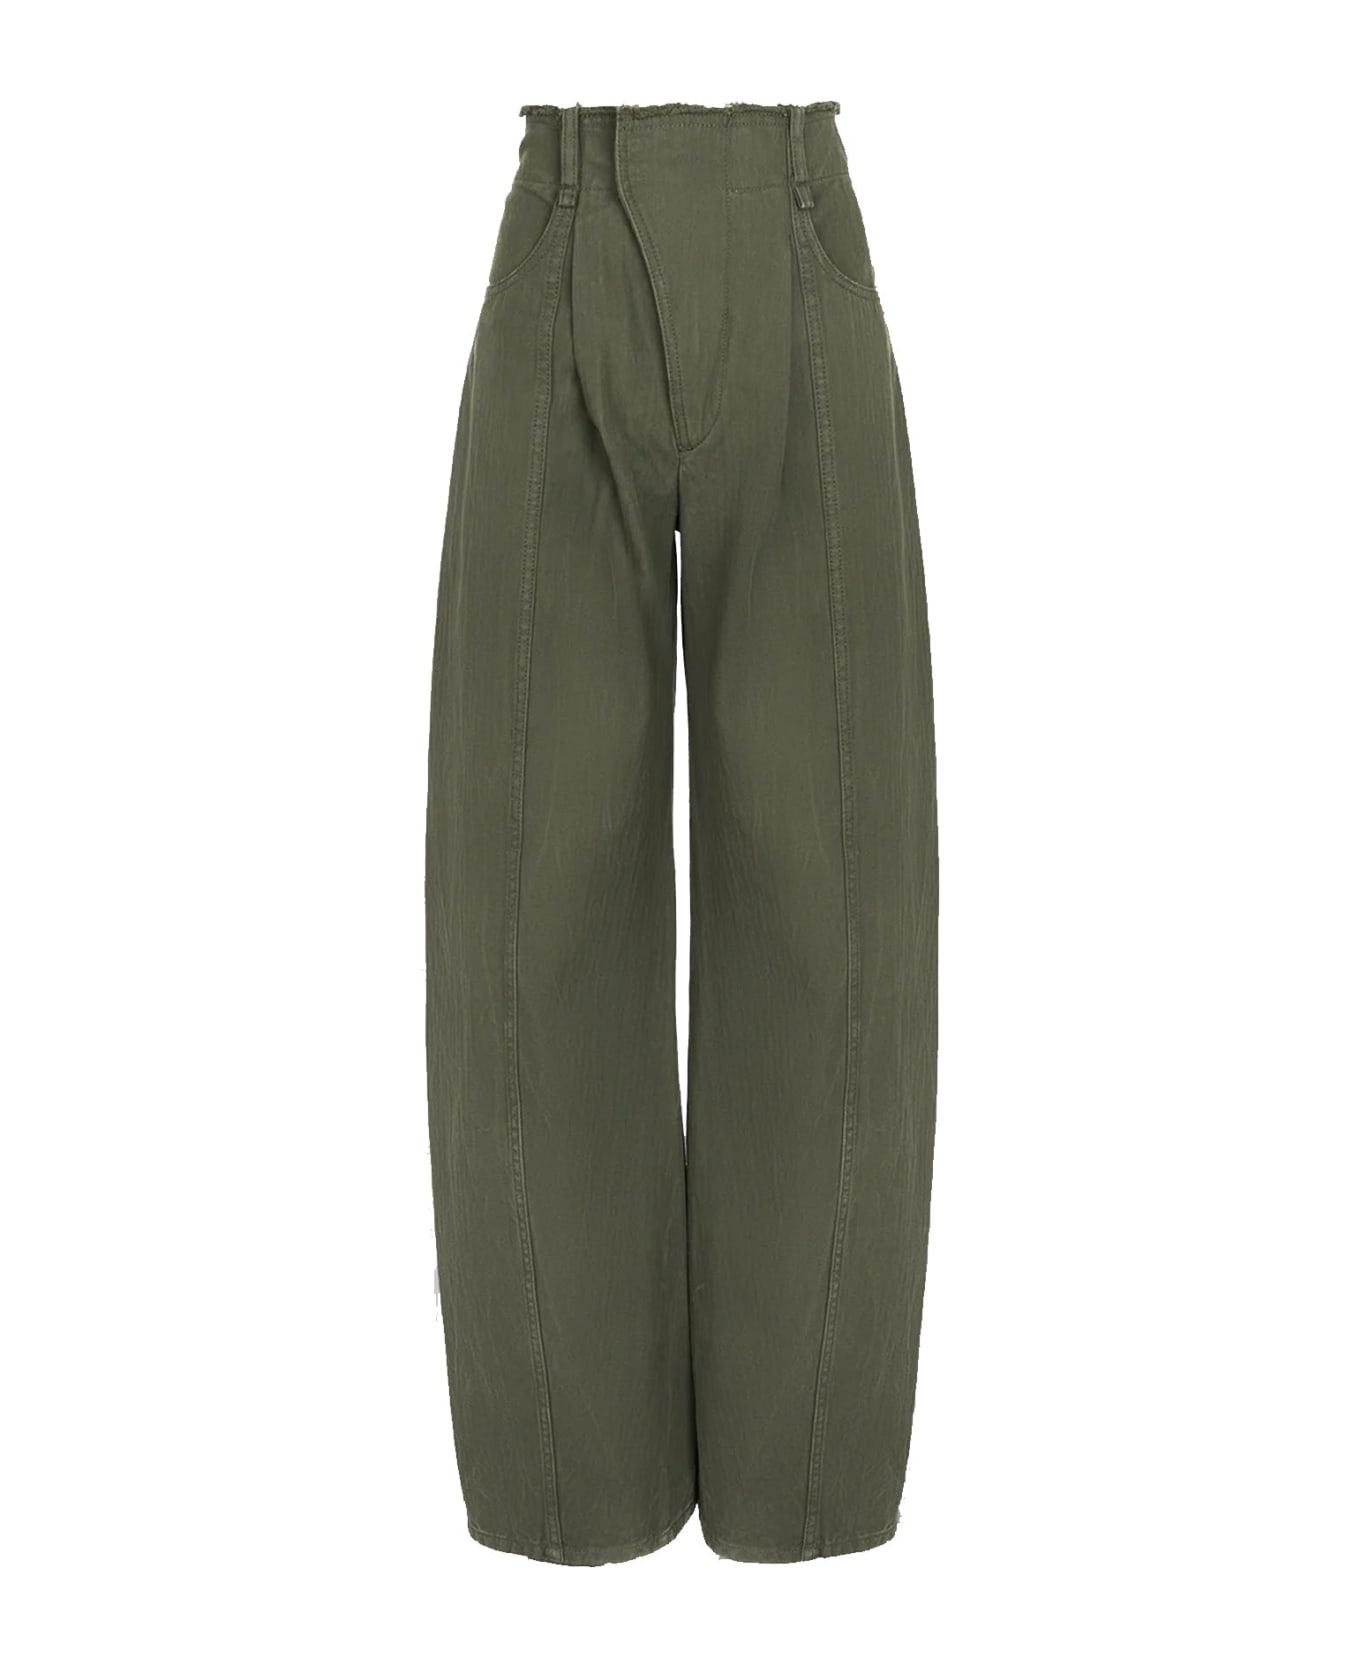 Chloé Wide-leg Pants - Green